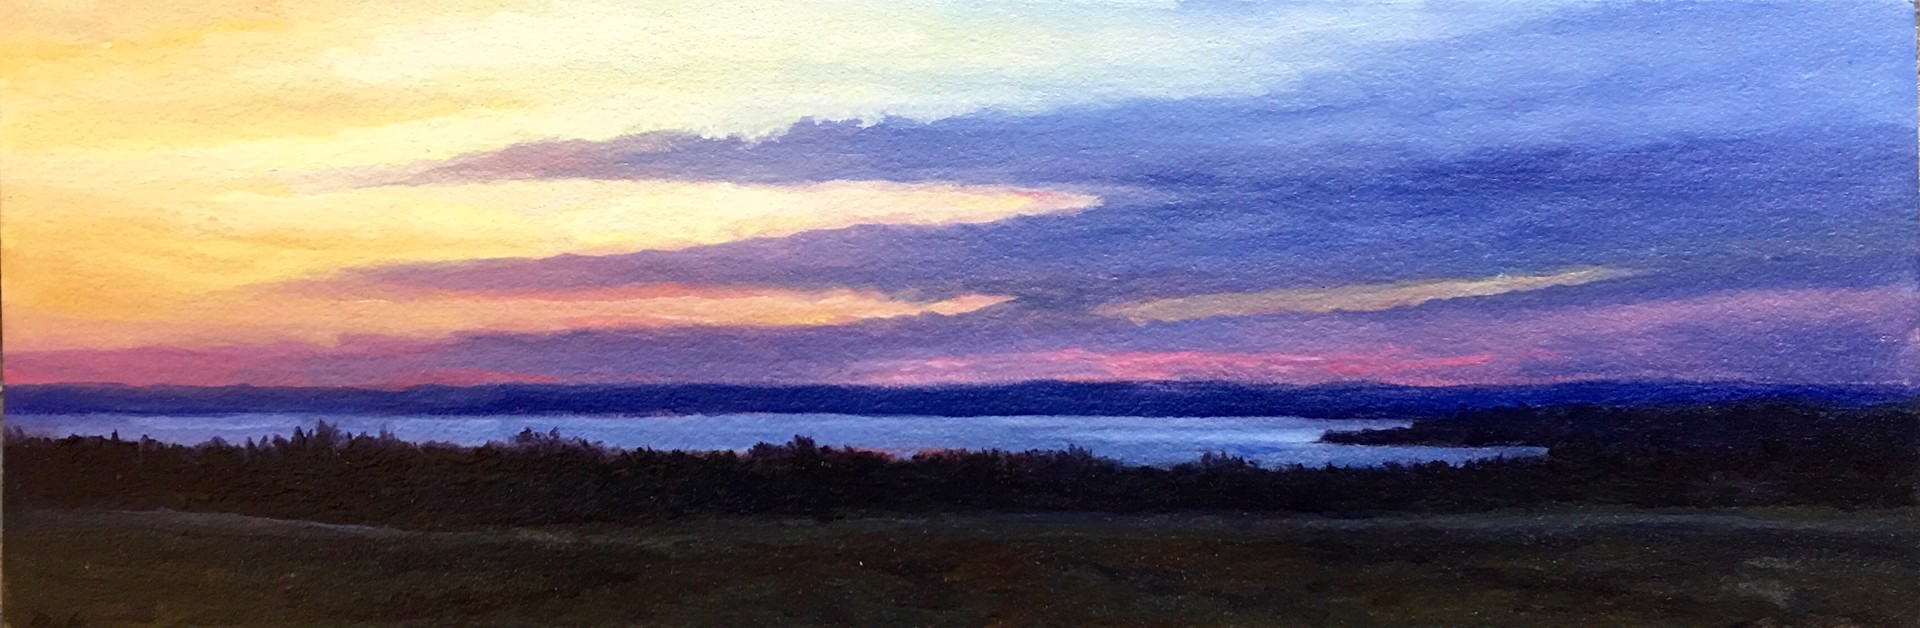 Vineyard Sunset by Edward Duff